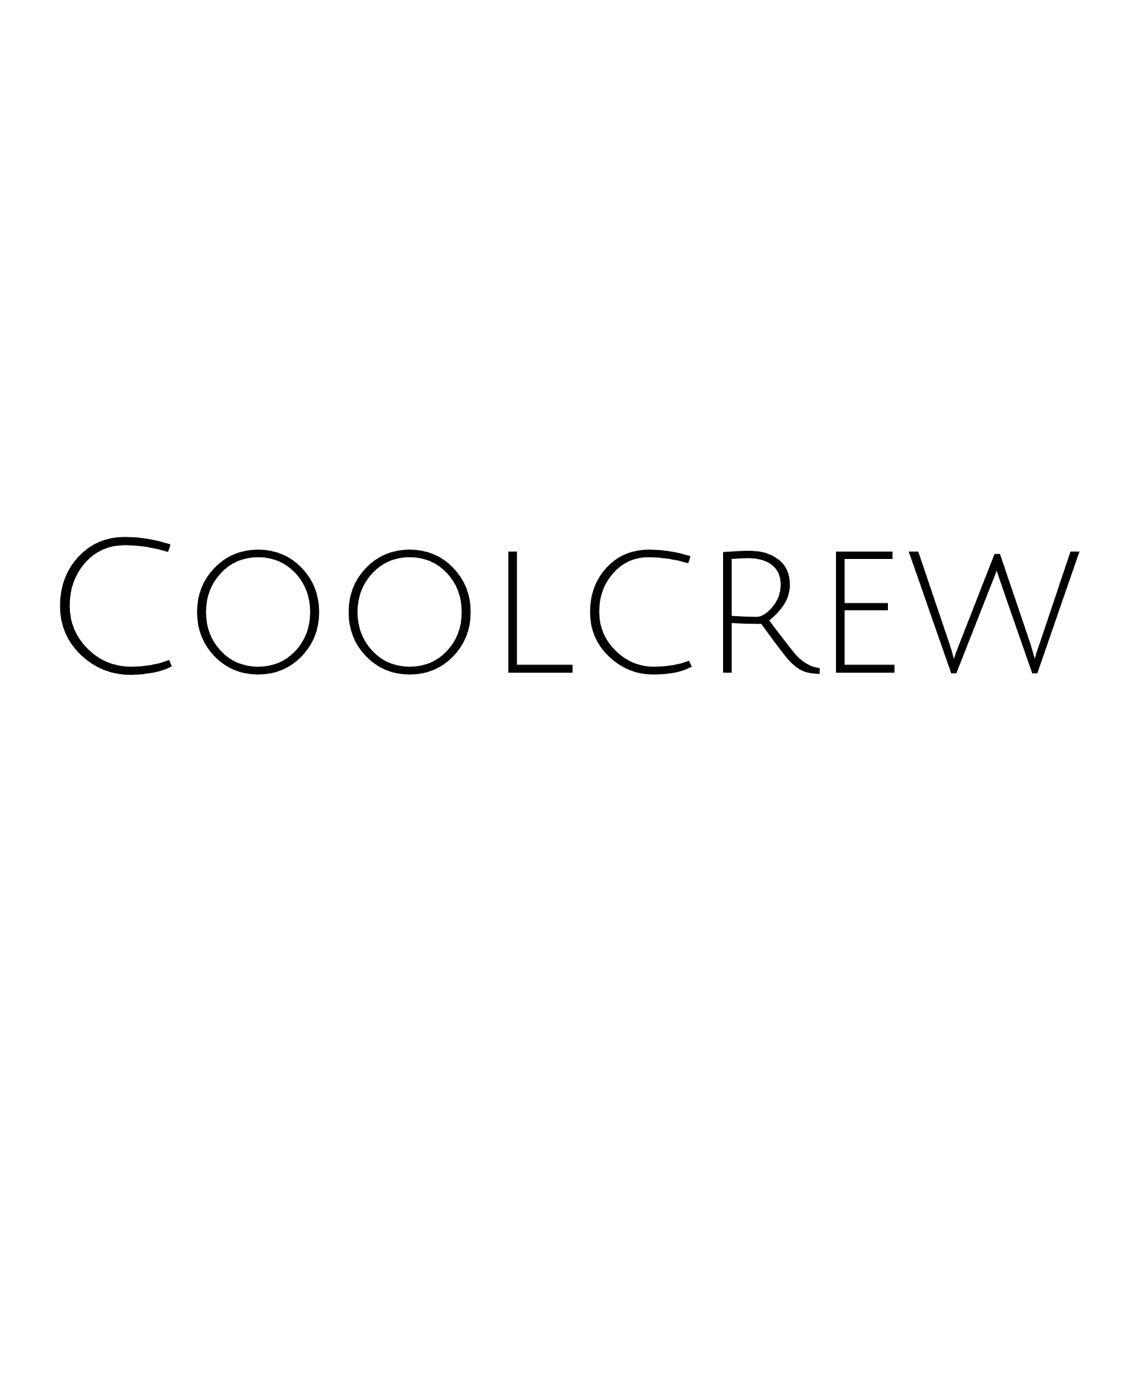 coolcrew